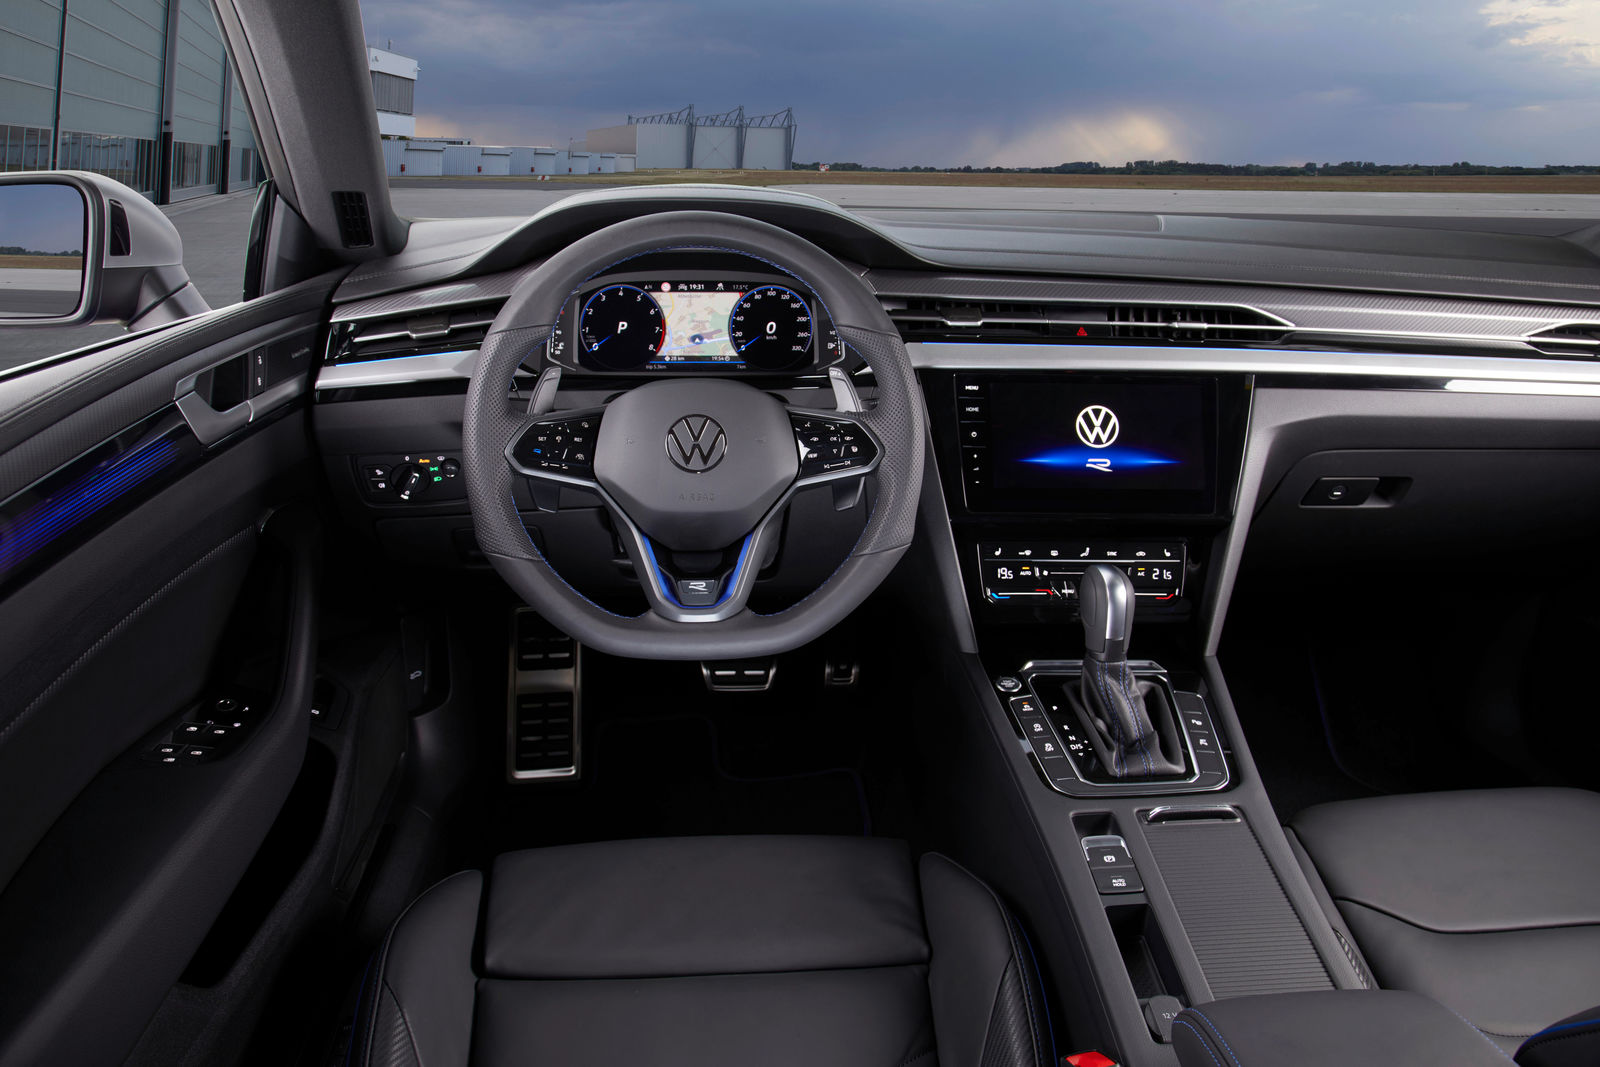 Ambientebeleuchtung Nachrüsten im Auto Innenraumbeleuchtung Beleuchtung geeignet für VW Arteon 1. Generation - 02